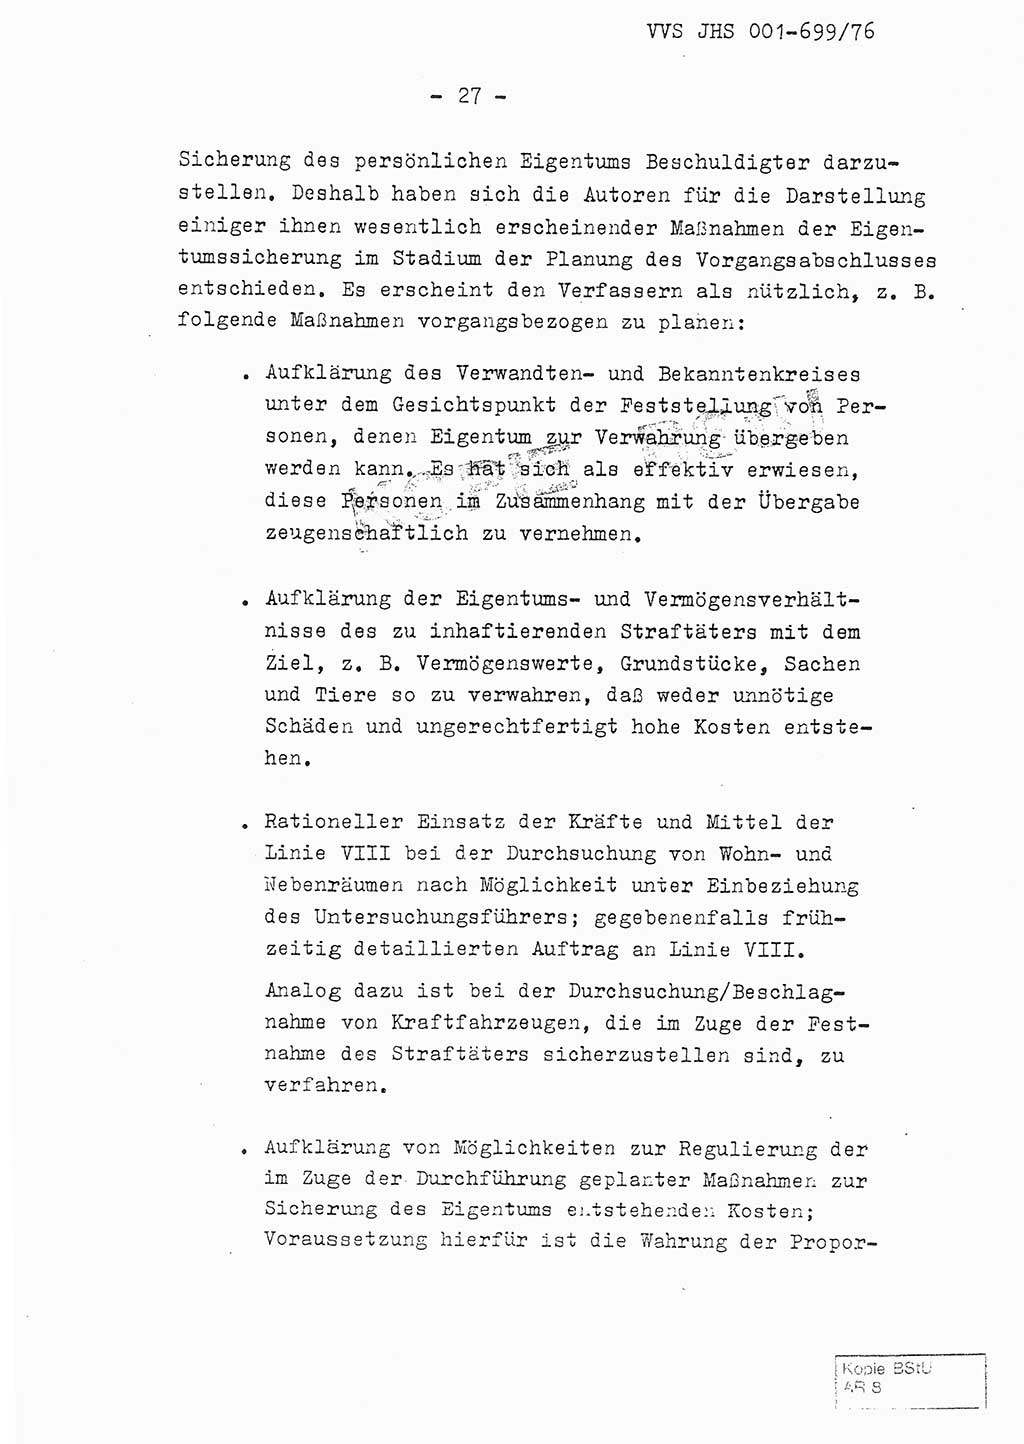 Fachschulabschlußarbeit Leutnant Volkmar Taubert (HA Ⅸ/9), Leutnant Axel Naumann (HA Ⅸ/9), Unterleutnat Detlef Debski (HA Ⅸ/9), Ministerium für Staatssicherheit (MfS) [Deutsche Demokratische Republik (DDR)], Juristische Hochschule (JHS), Vertrauliche Verschlußsache (VVS) 001-699/76, Potsdam 1976, Seite 27 (FS-Abschl.-Arb. MfS DDR JHS VVS 001-699/76 1976, S. 27)